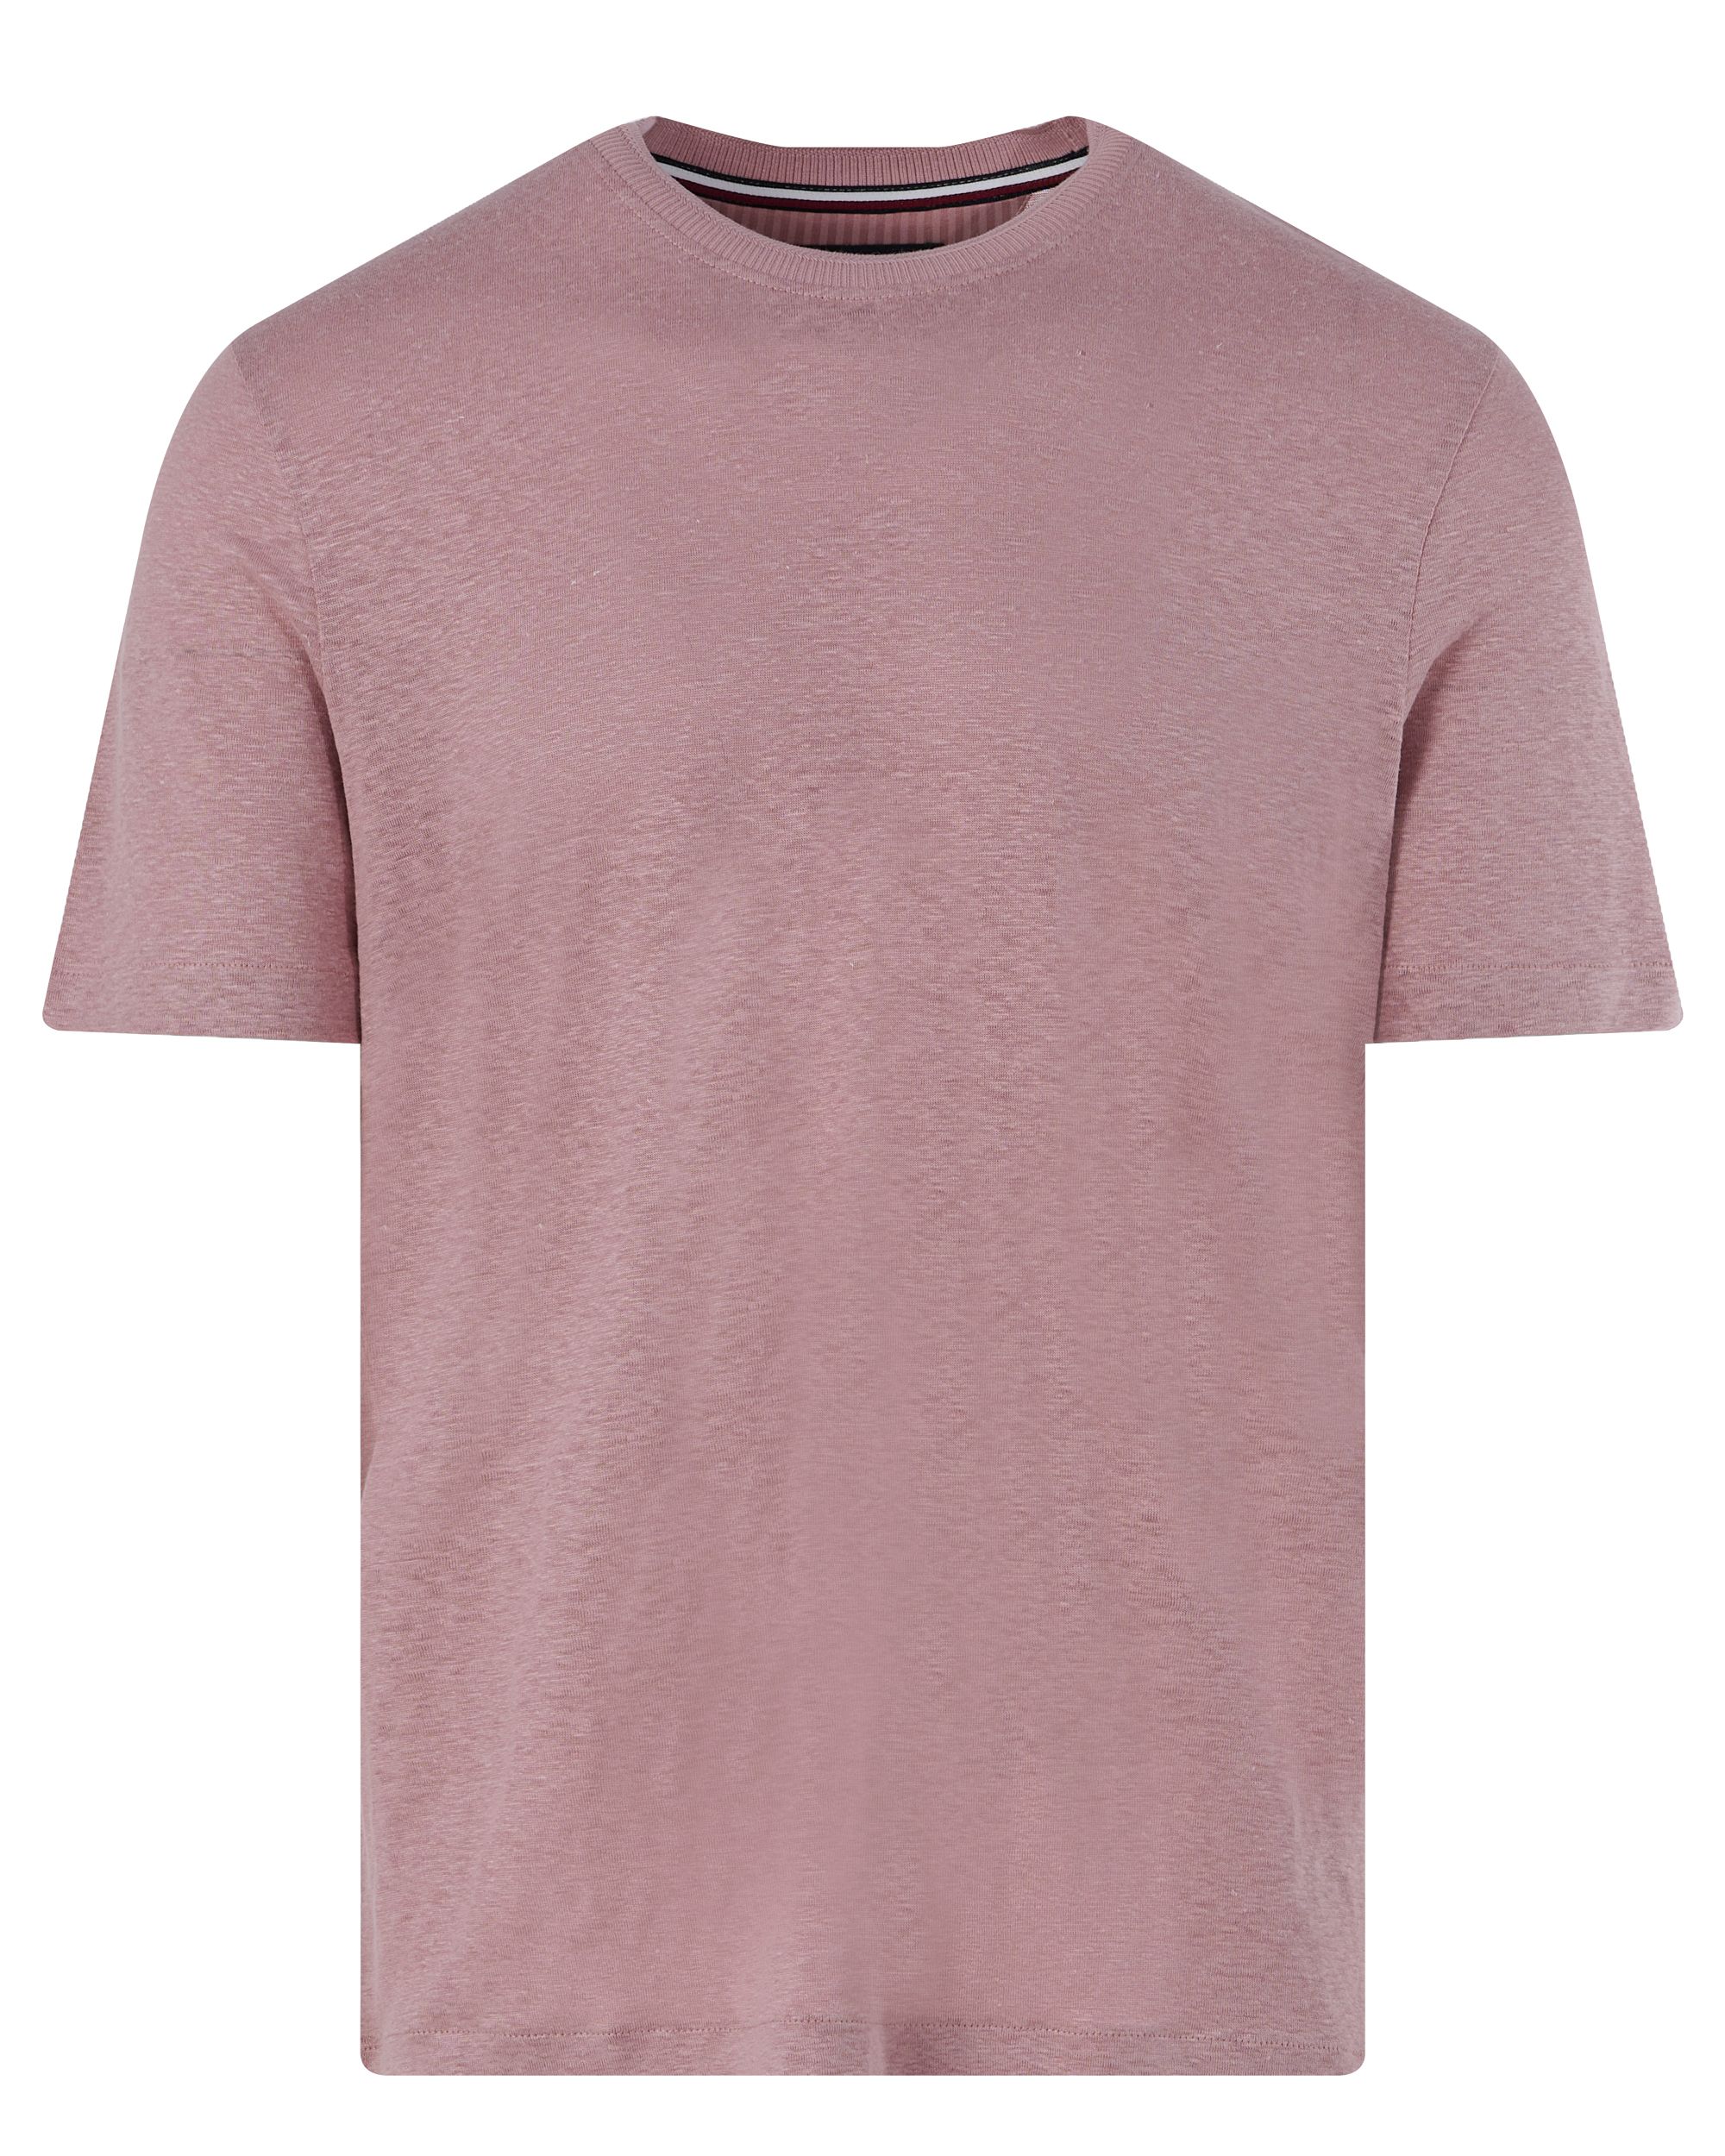 Tommy Hilfiger Menswear T-shirt KM Roze 094647-001-L